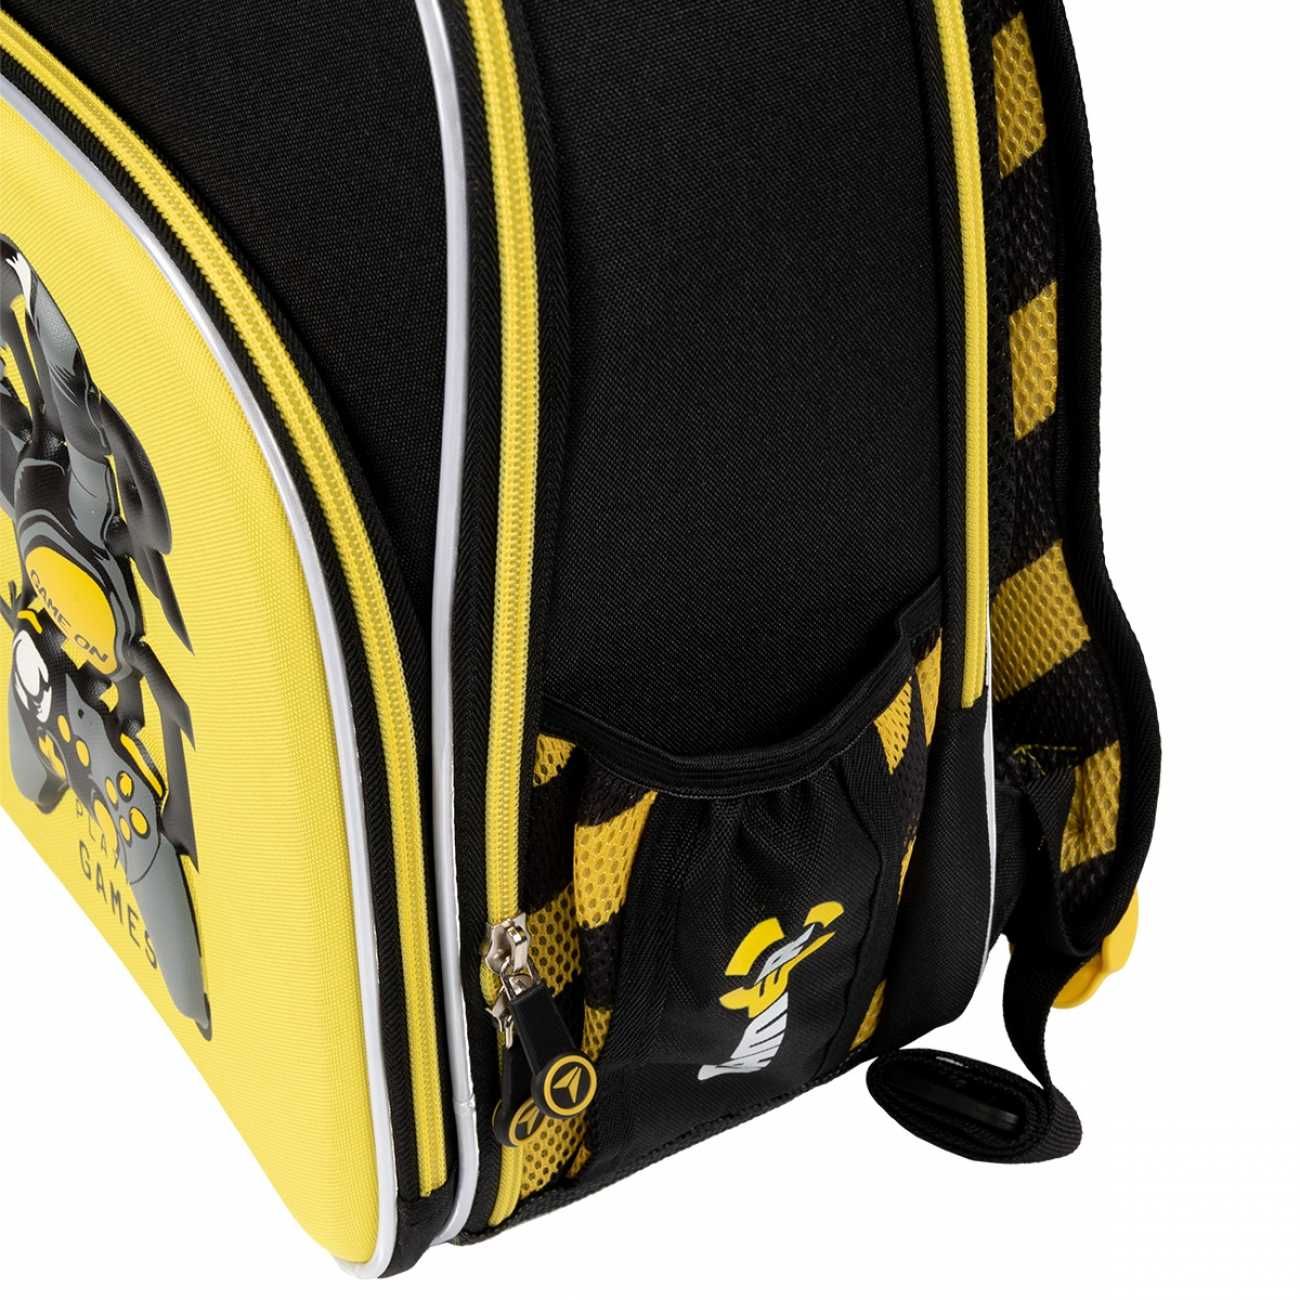 Рюкзак шкільний каркасний YES + пенал + сумка. На зріст 130-145 см